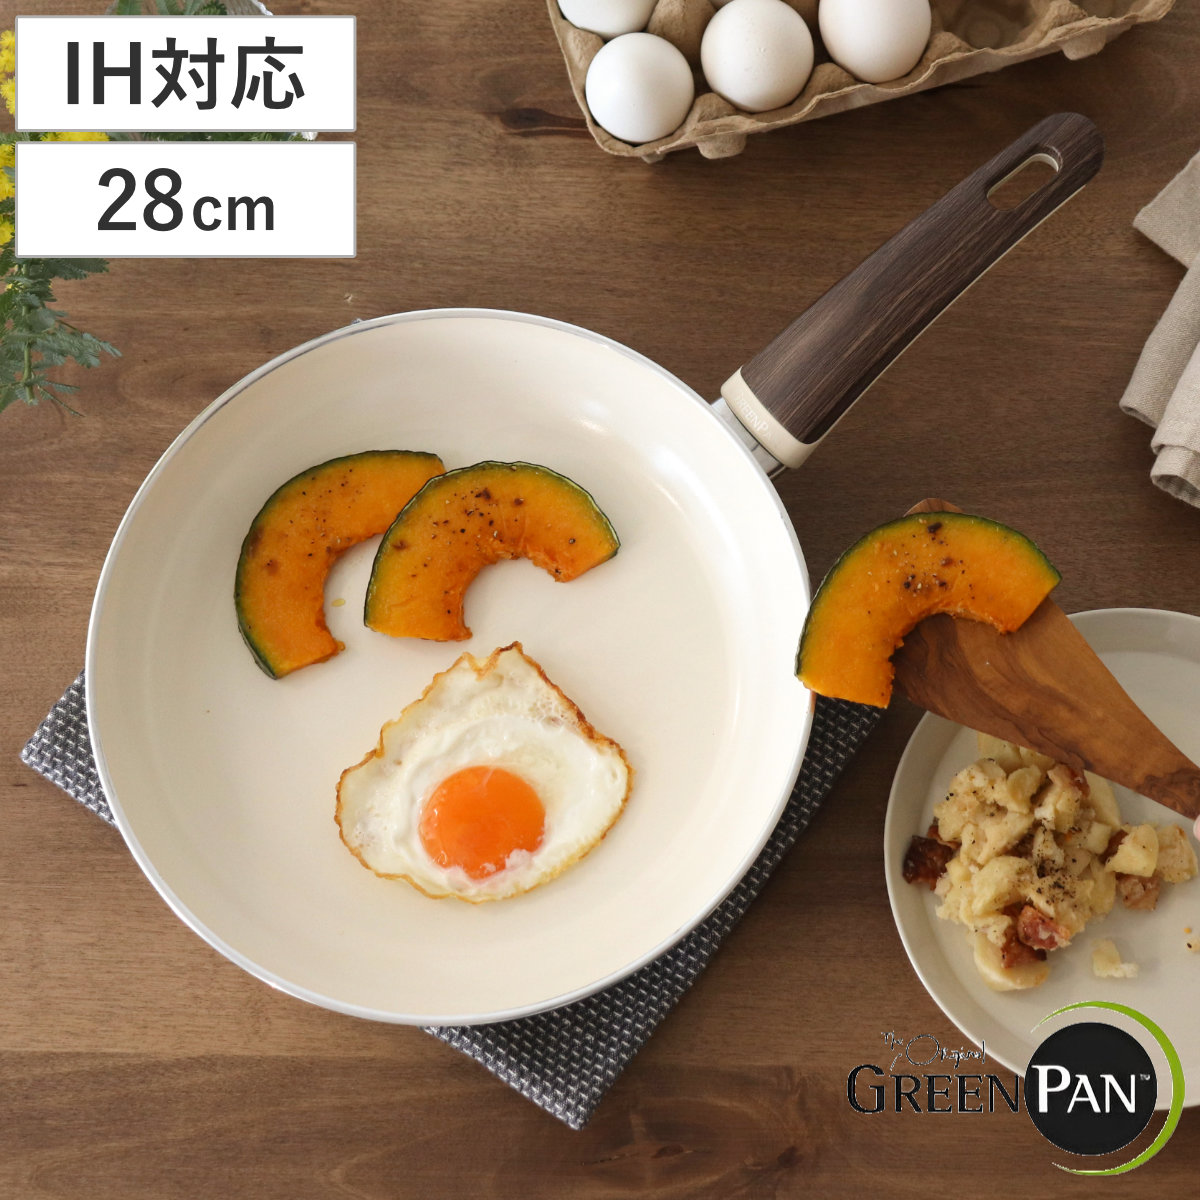 GREEN PAN グリーンパン フライパン 28cm WOOD-BE ウッドビー ダイヤモンド粒子配合 IH対応